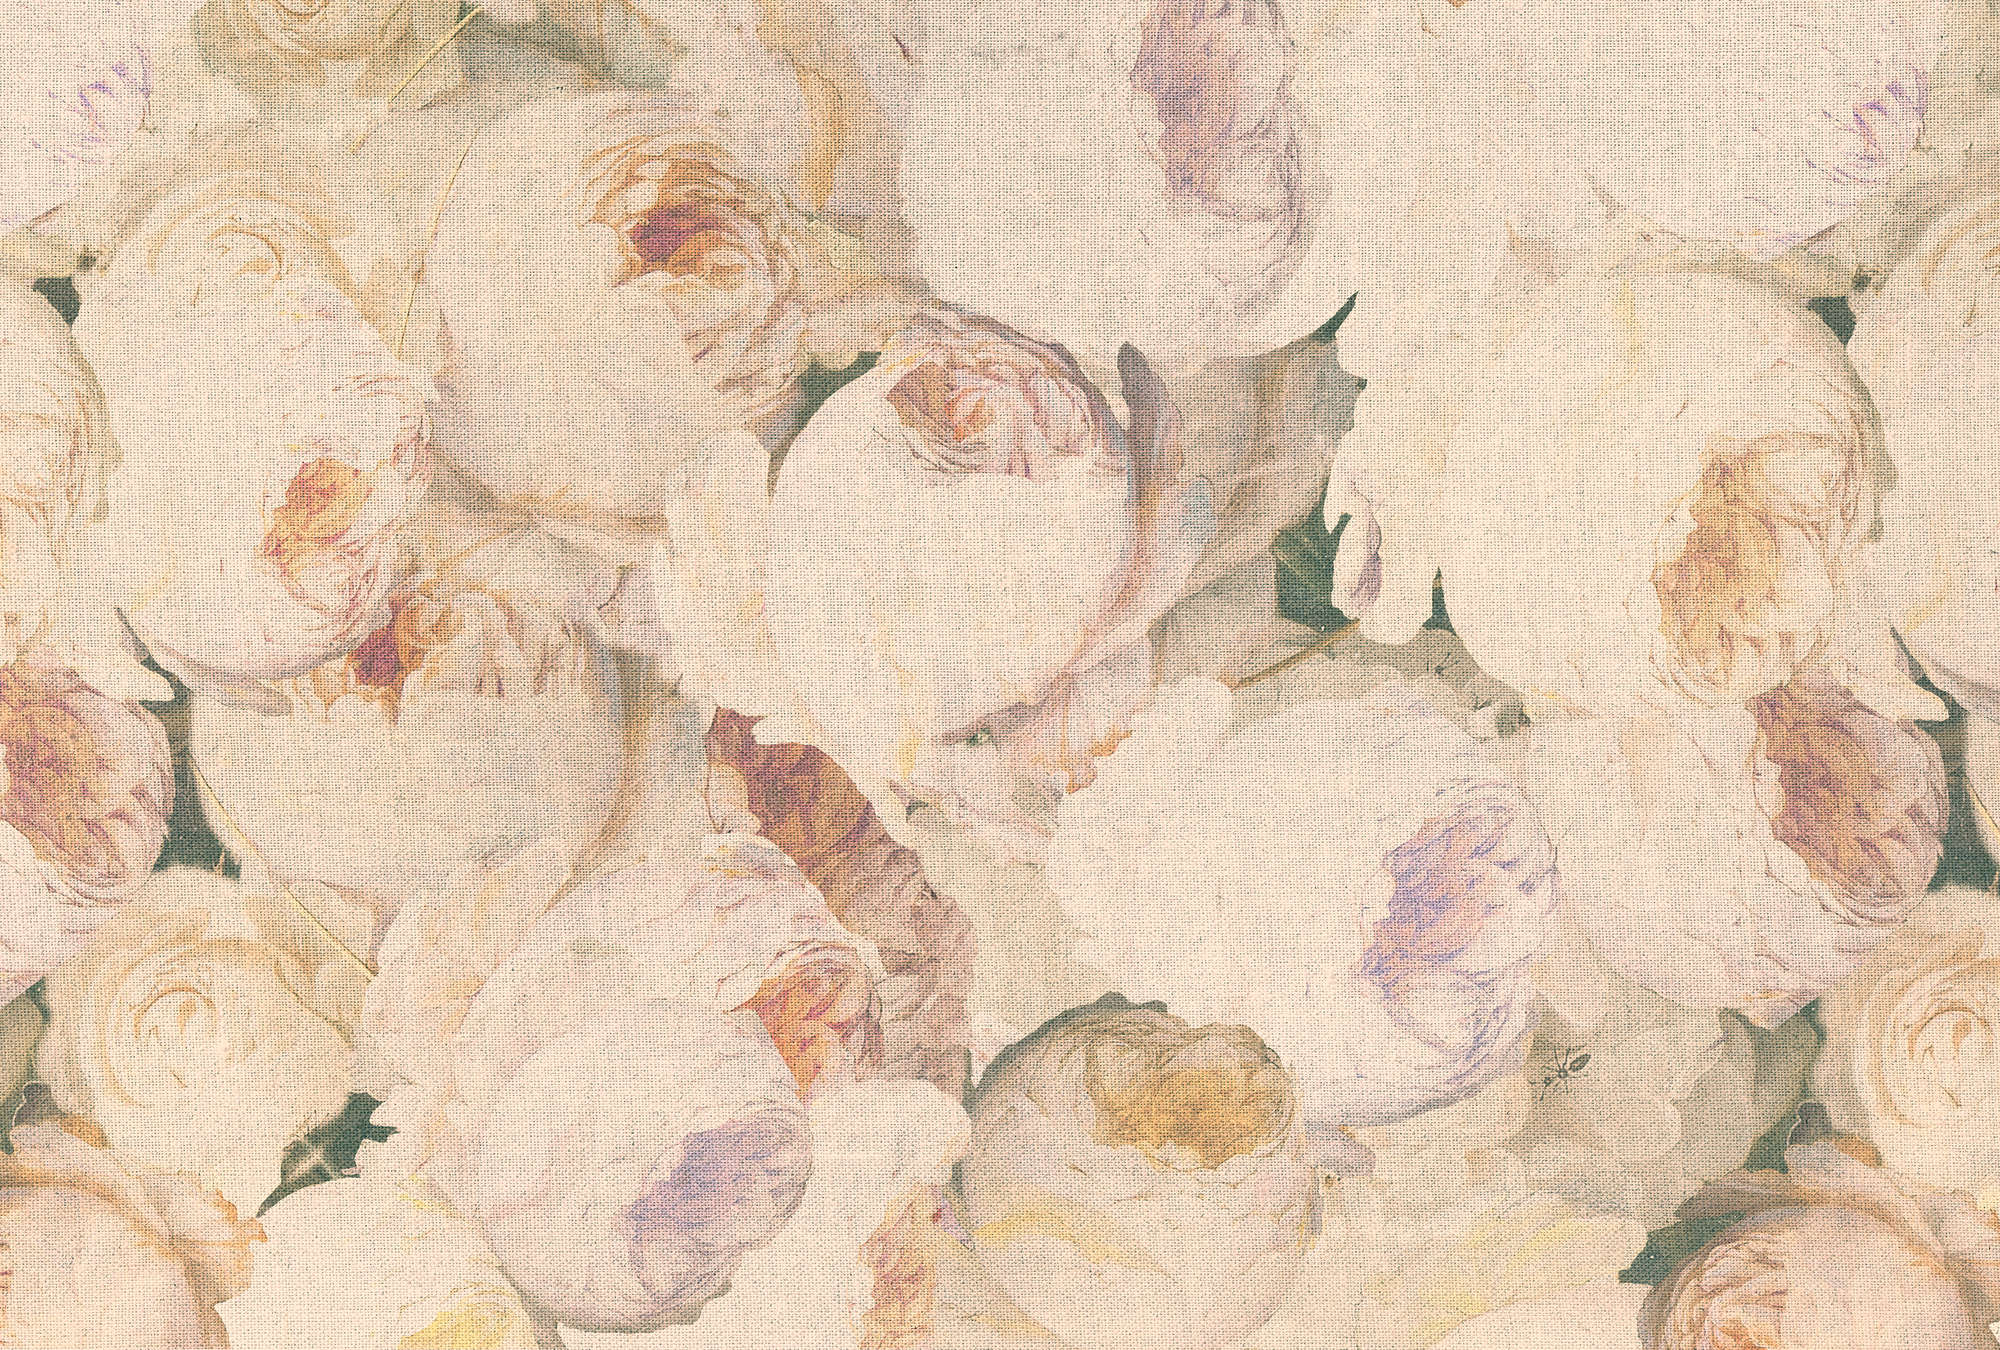             Carta da parati effetto lino con rose e fiori - Crema, rosa
        